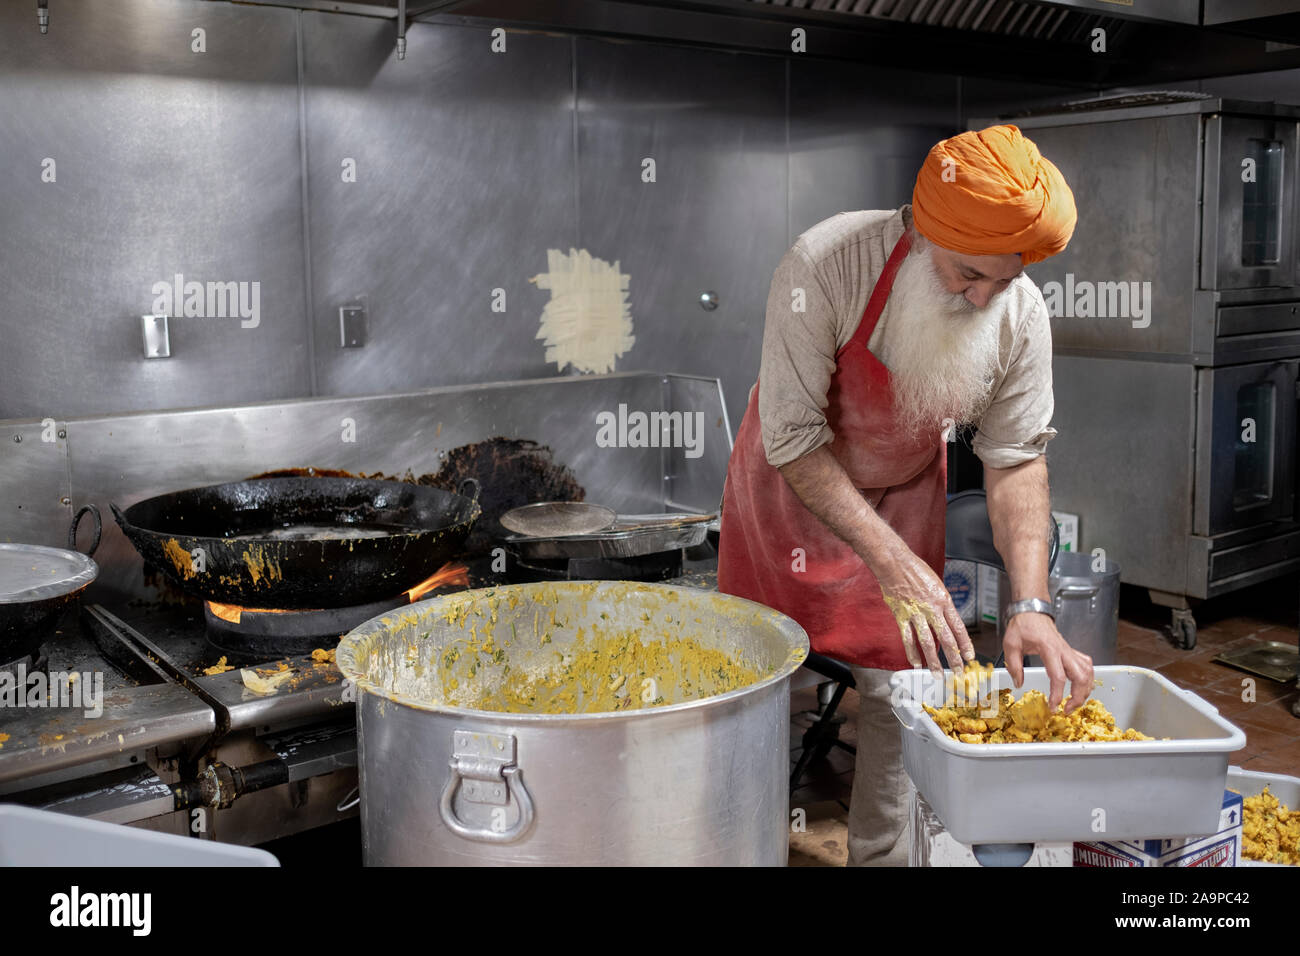 Ein Freiwilliger in einer langar, einem Sikh Tempel Küche, bereitet Pakora, ein frittiertes indische vegetarische. Snack. In South Richmond Hill, Queens, New York City. Stockfoto